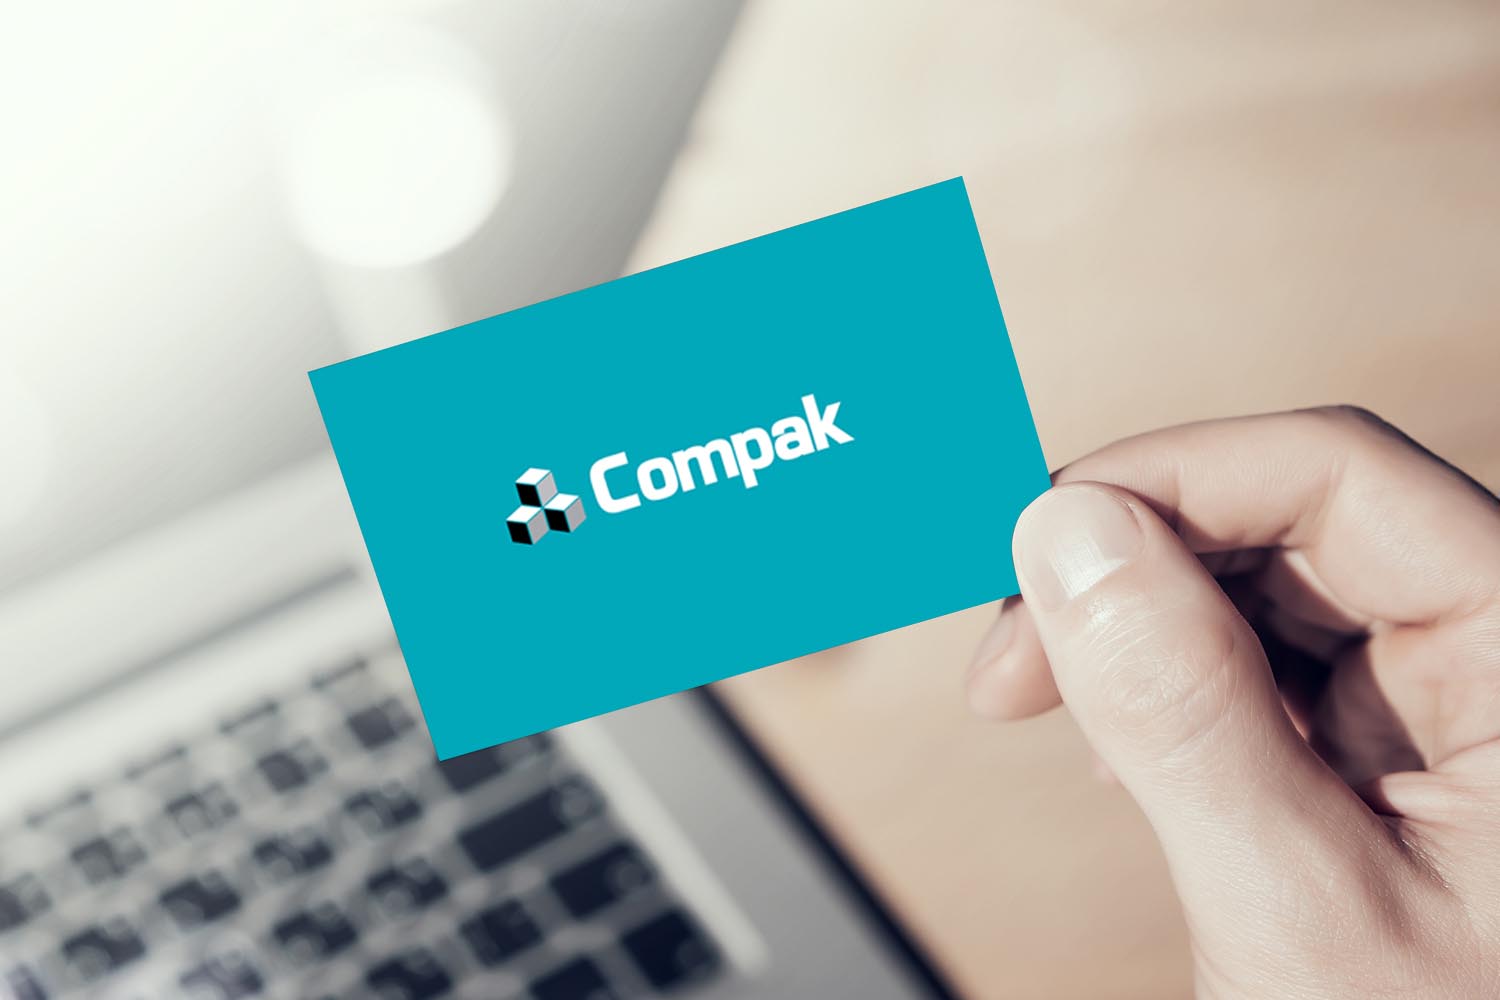 Разработка логотипа и фирменного стиля для компании Compaк